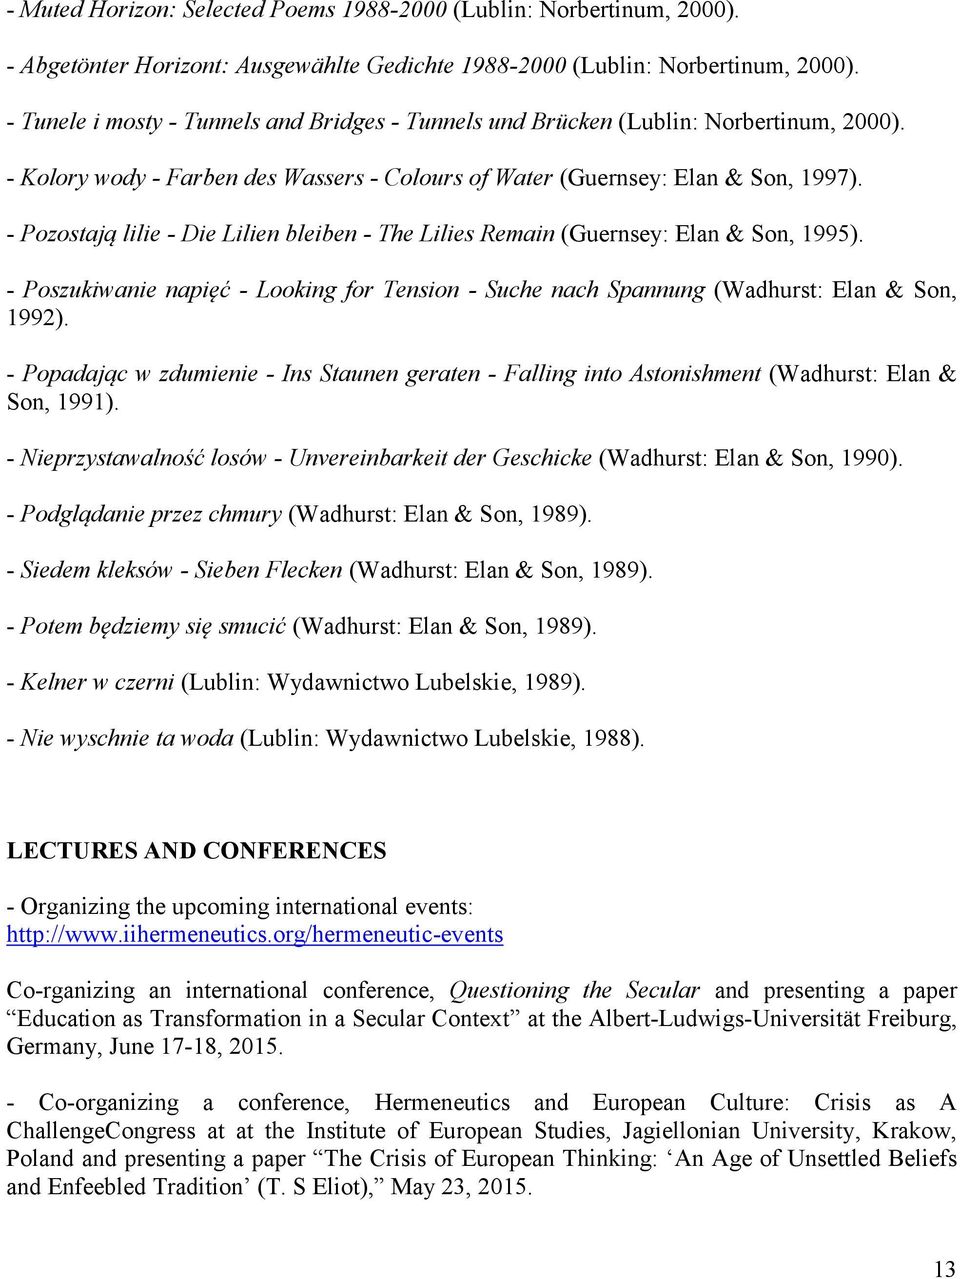 - Pozostają lilie - Die Lilien bleiben - The Lilies Remain (Guernsey: Elan & Son, 1995). - Poszukiwanie napięć - Looking for Tension - Suche nach Spannung (Wadhurst: Elan & Son, 1992).